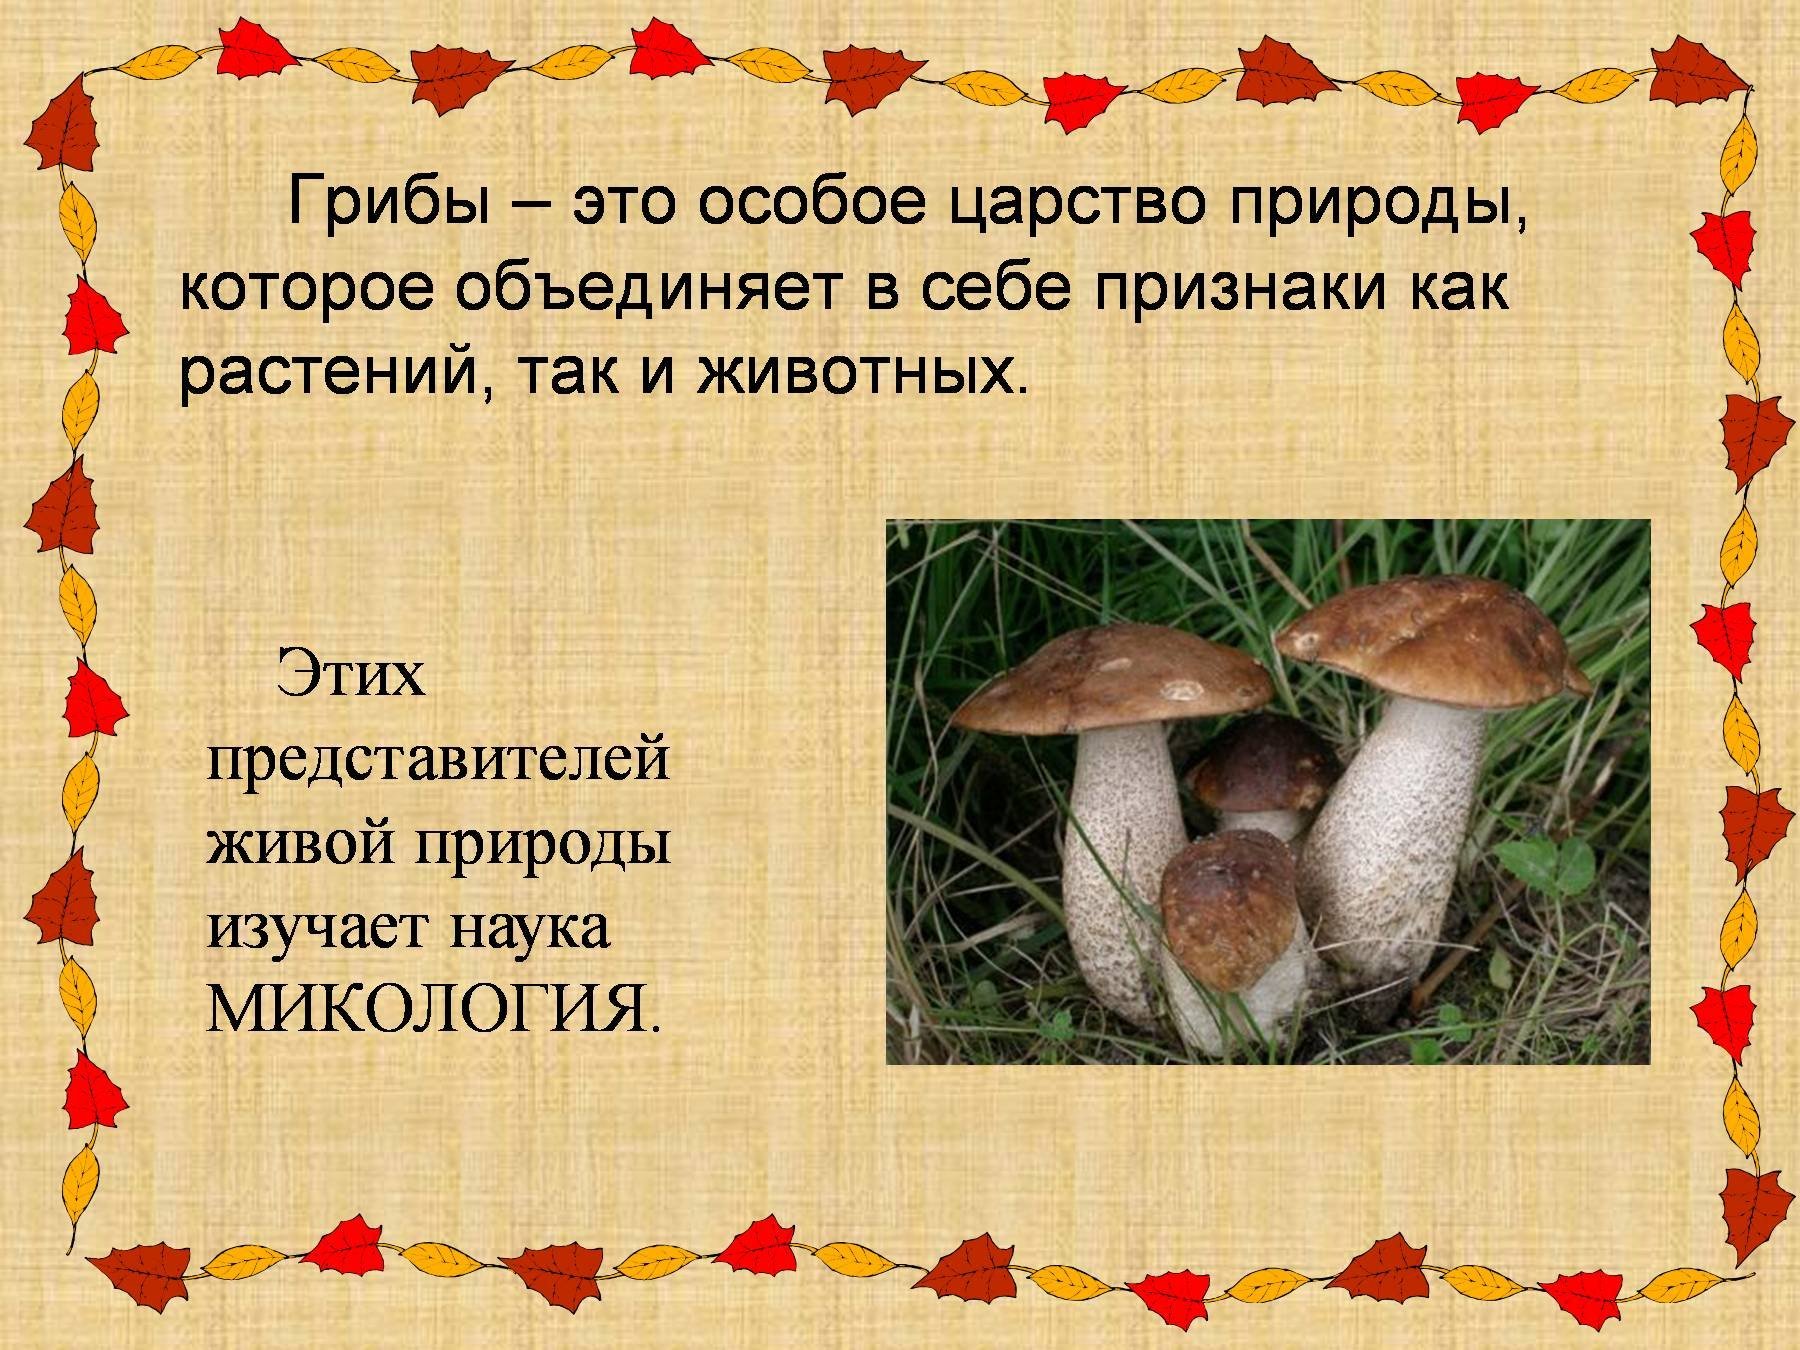 Есть царство грибов. Царство грибов. Презентация на тему царство грибы. Грибы царство живой природы. Грибы это особое царство природы.